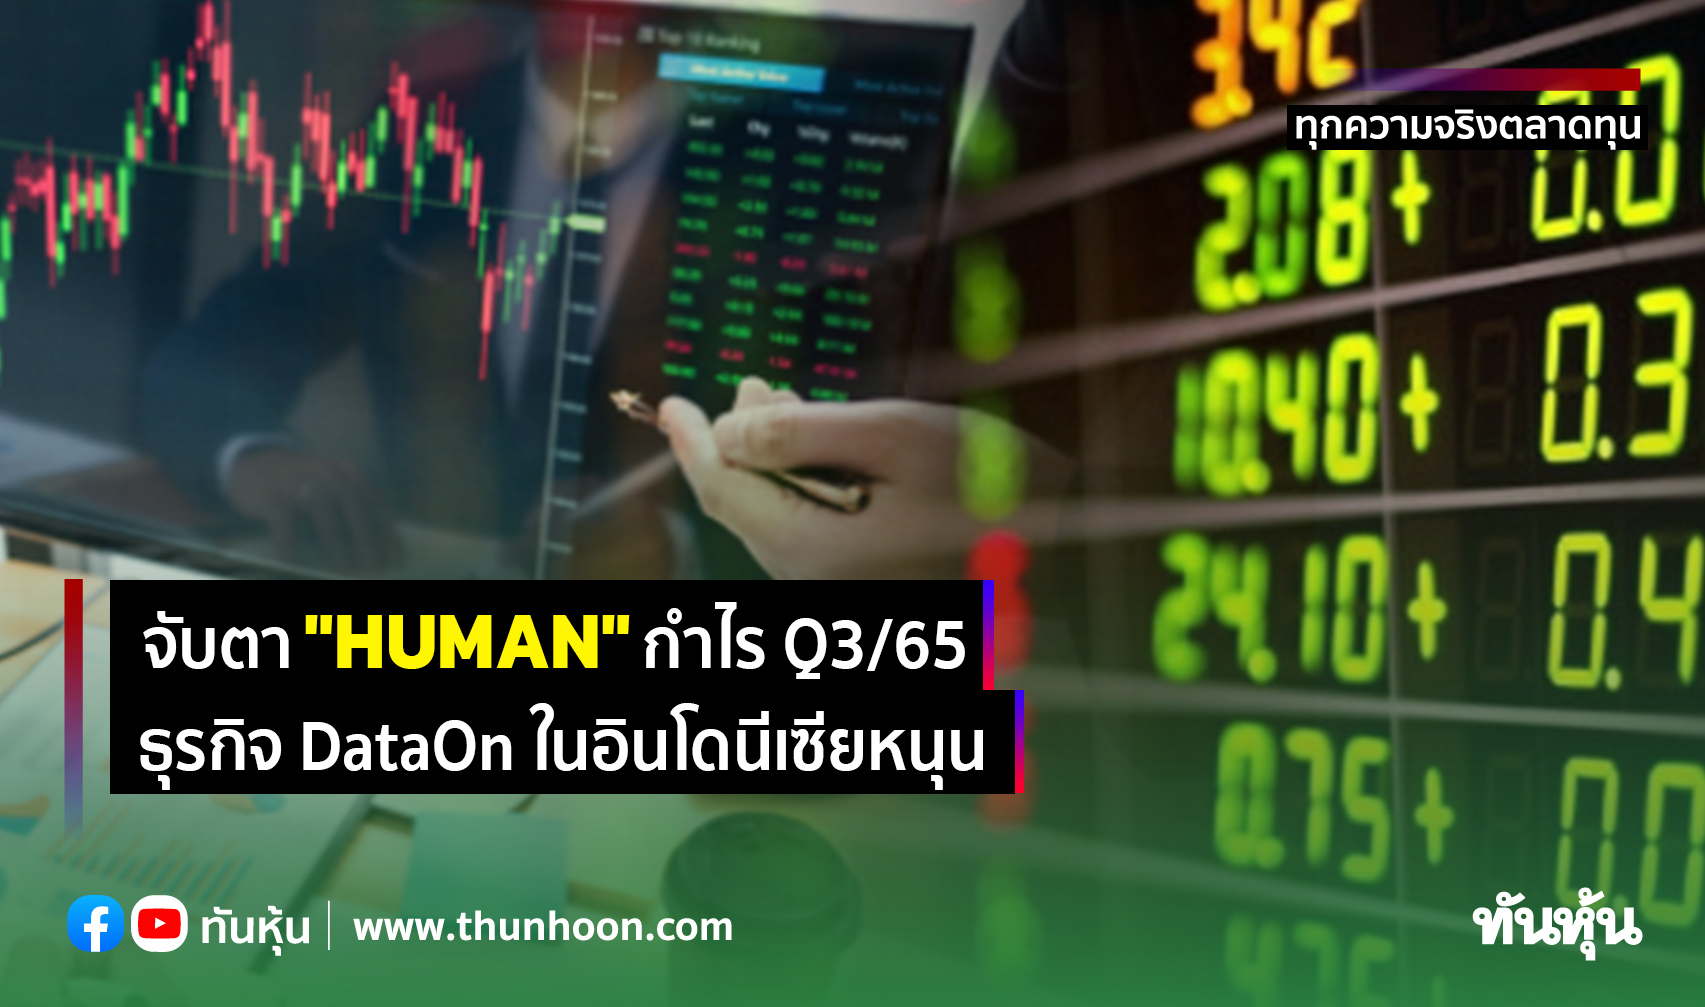 จับตา "HUMAN" กำไร Q3/65 ธุรกิจ DataOn ในอินโดนีเซียหนุน